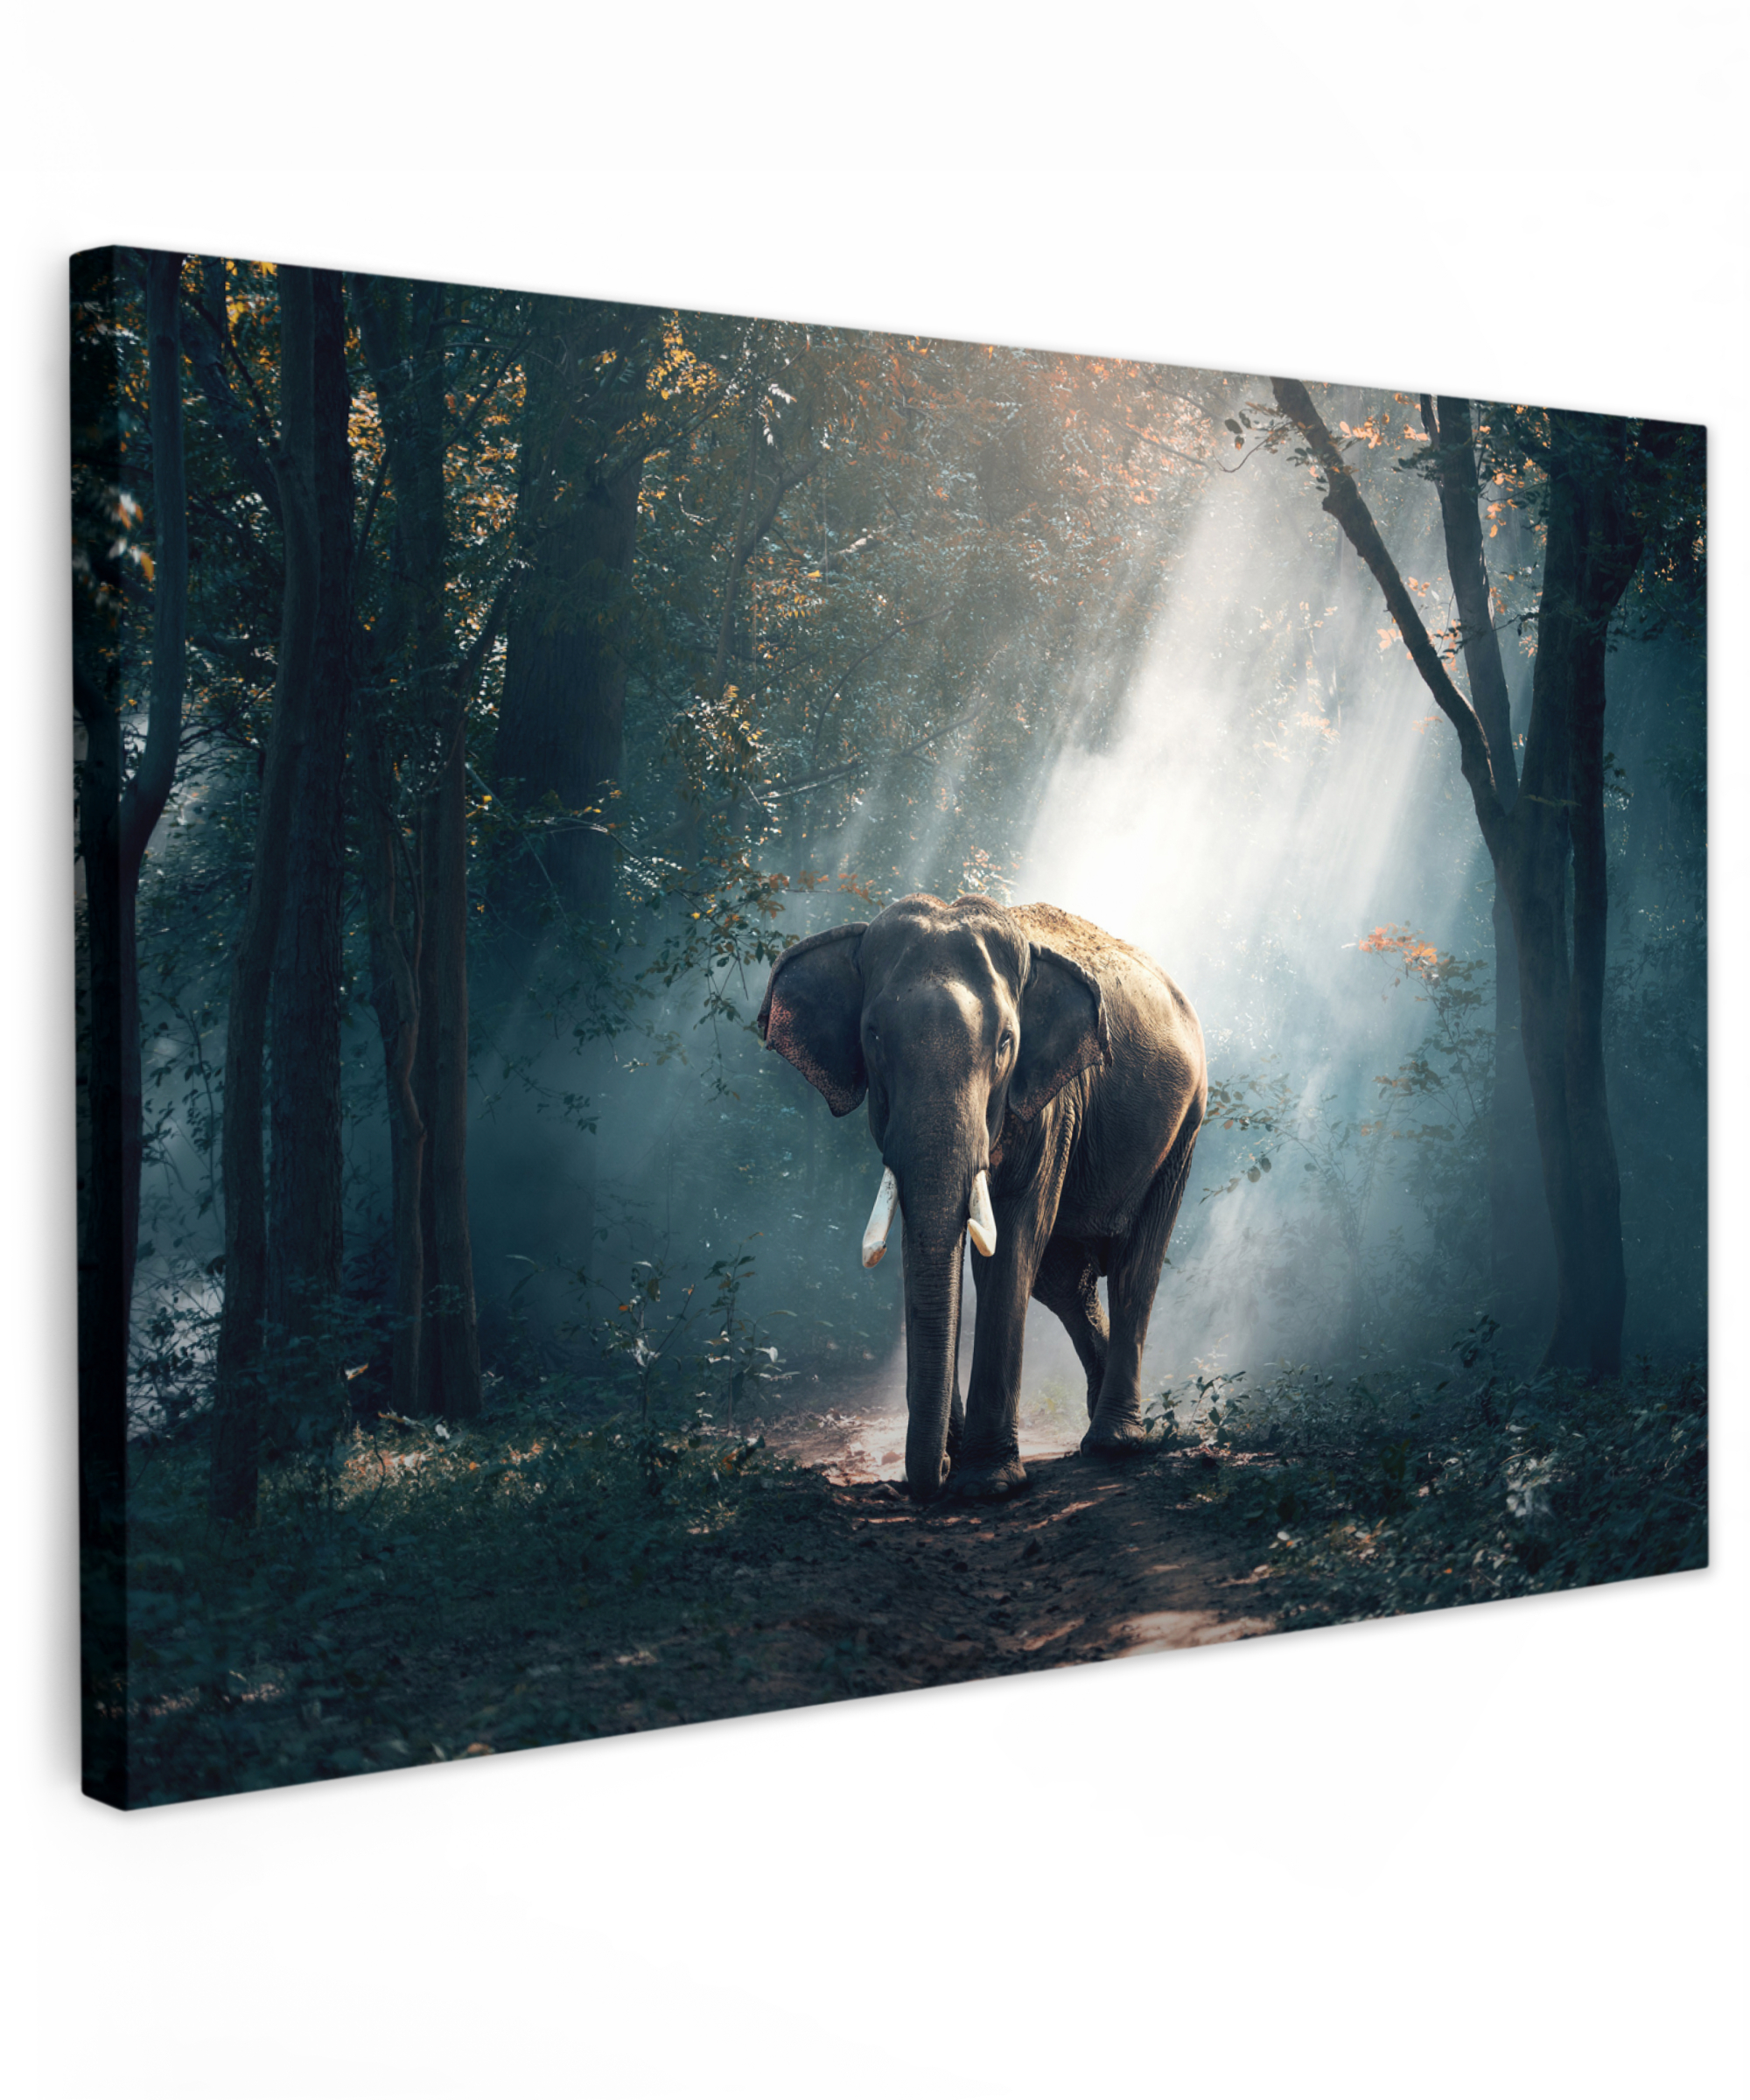 Tableau sur toile - Éléphant - Lumière - Forêt - Nature - Faune sauvage